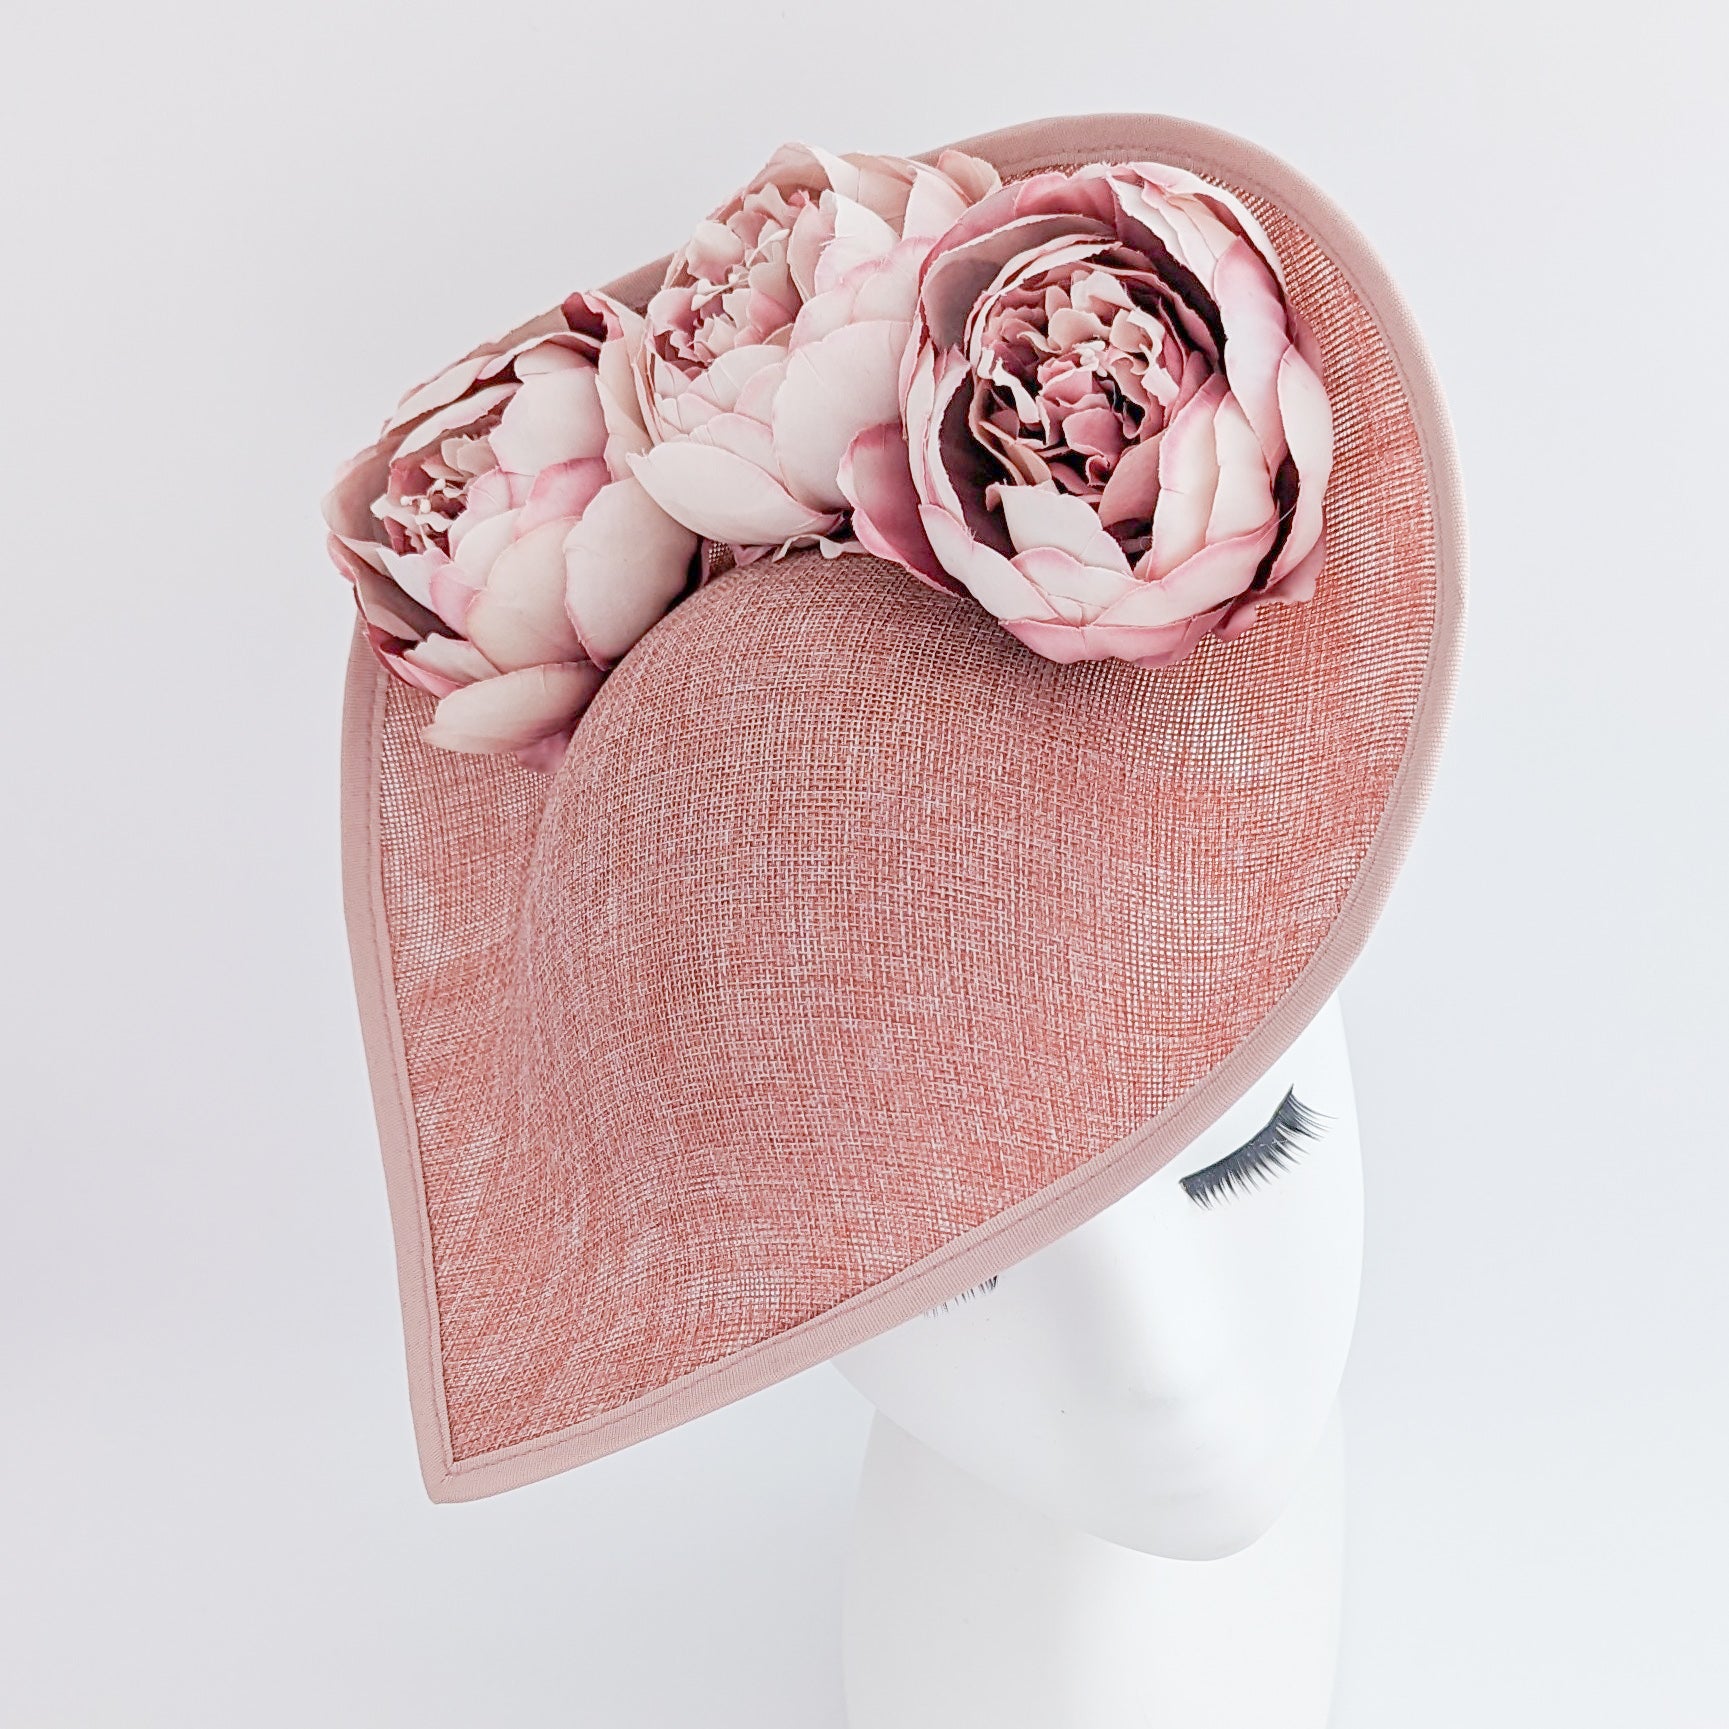 Blush pink large teardrop peony flower fascinator hat